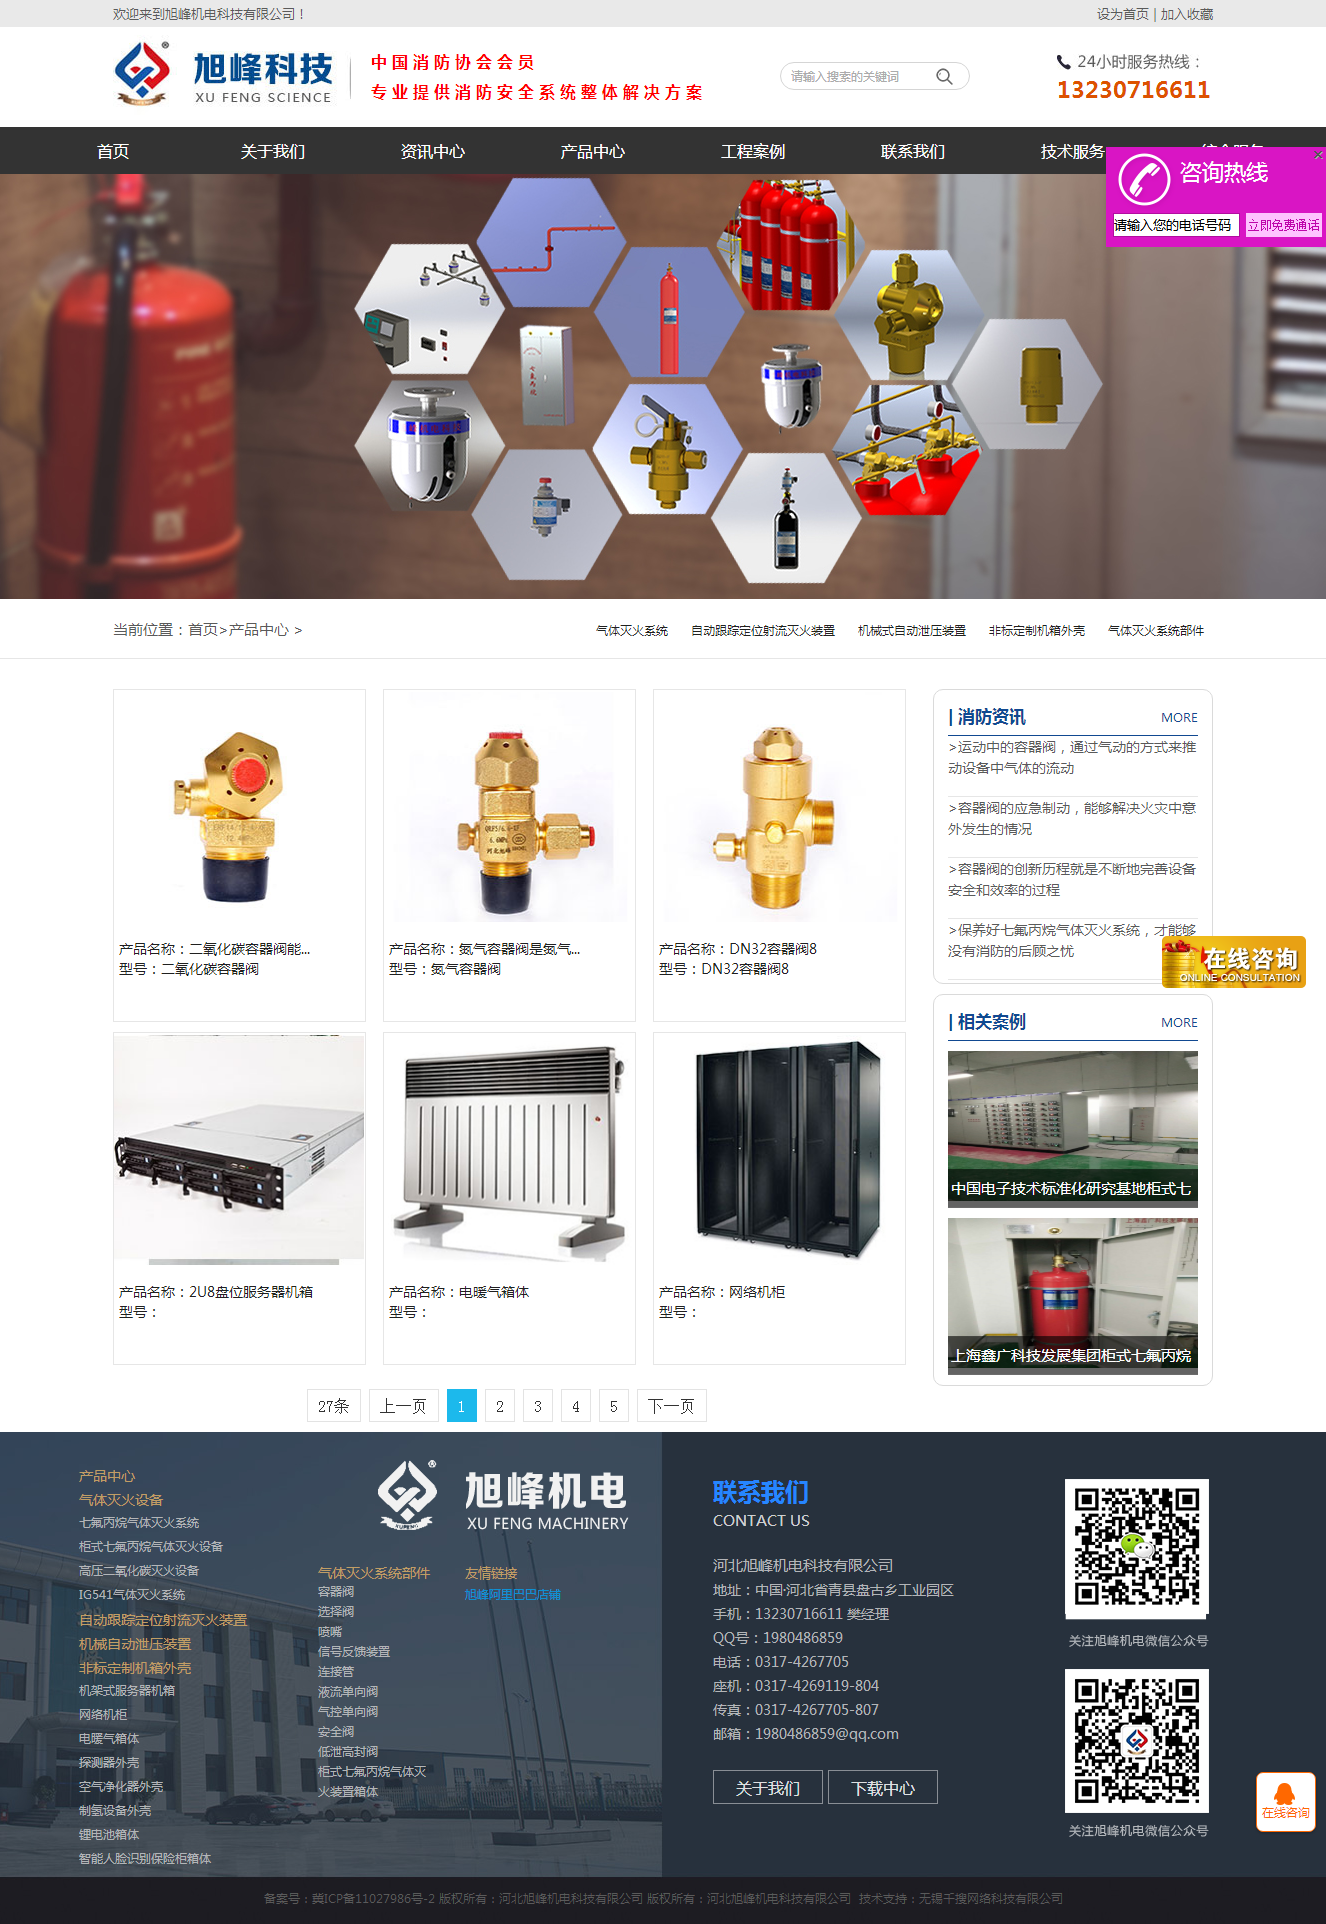 网站建设案例产品列表页-旭峰消防.png